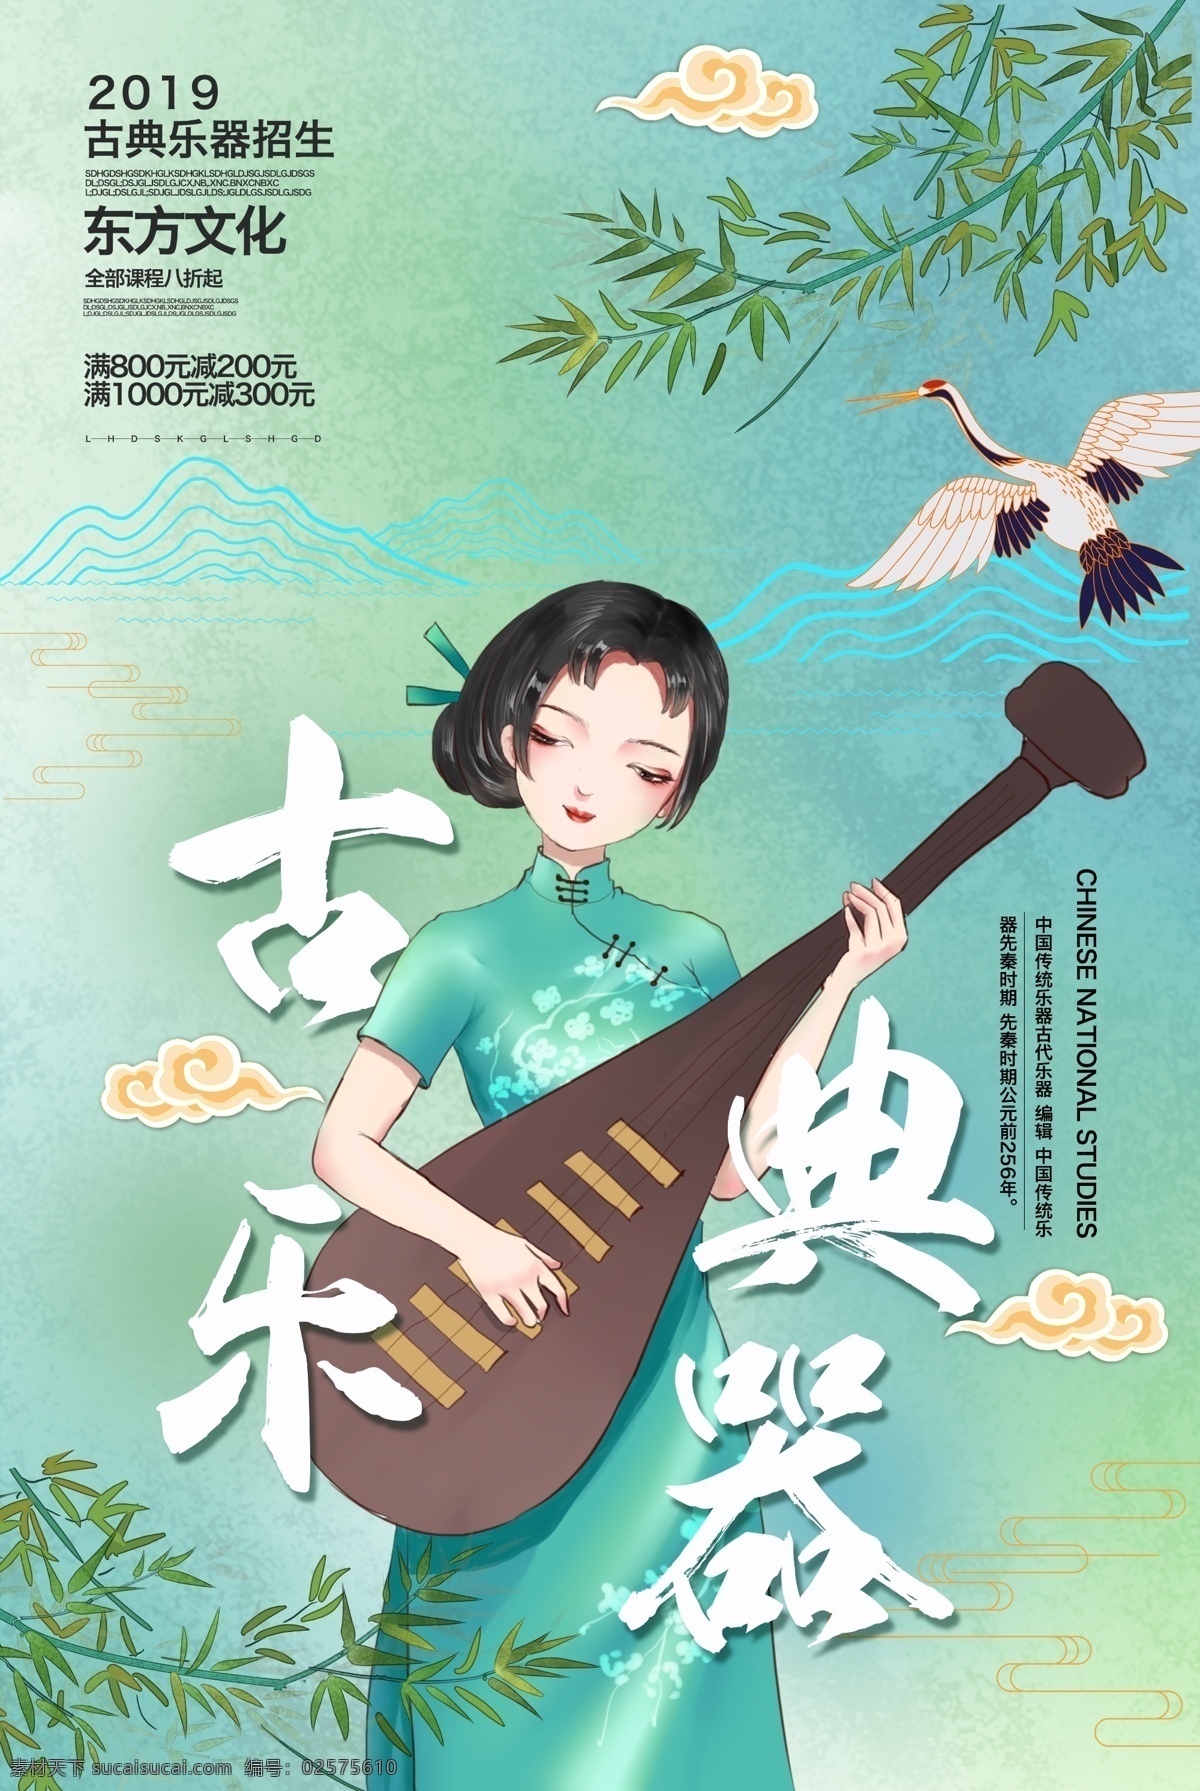 乐器 古风 节气 传统节日 复古 海报 传统 节日